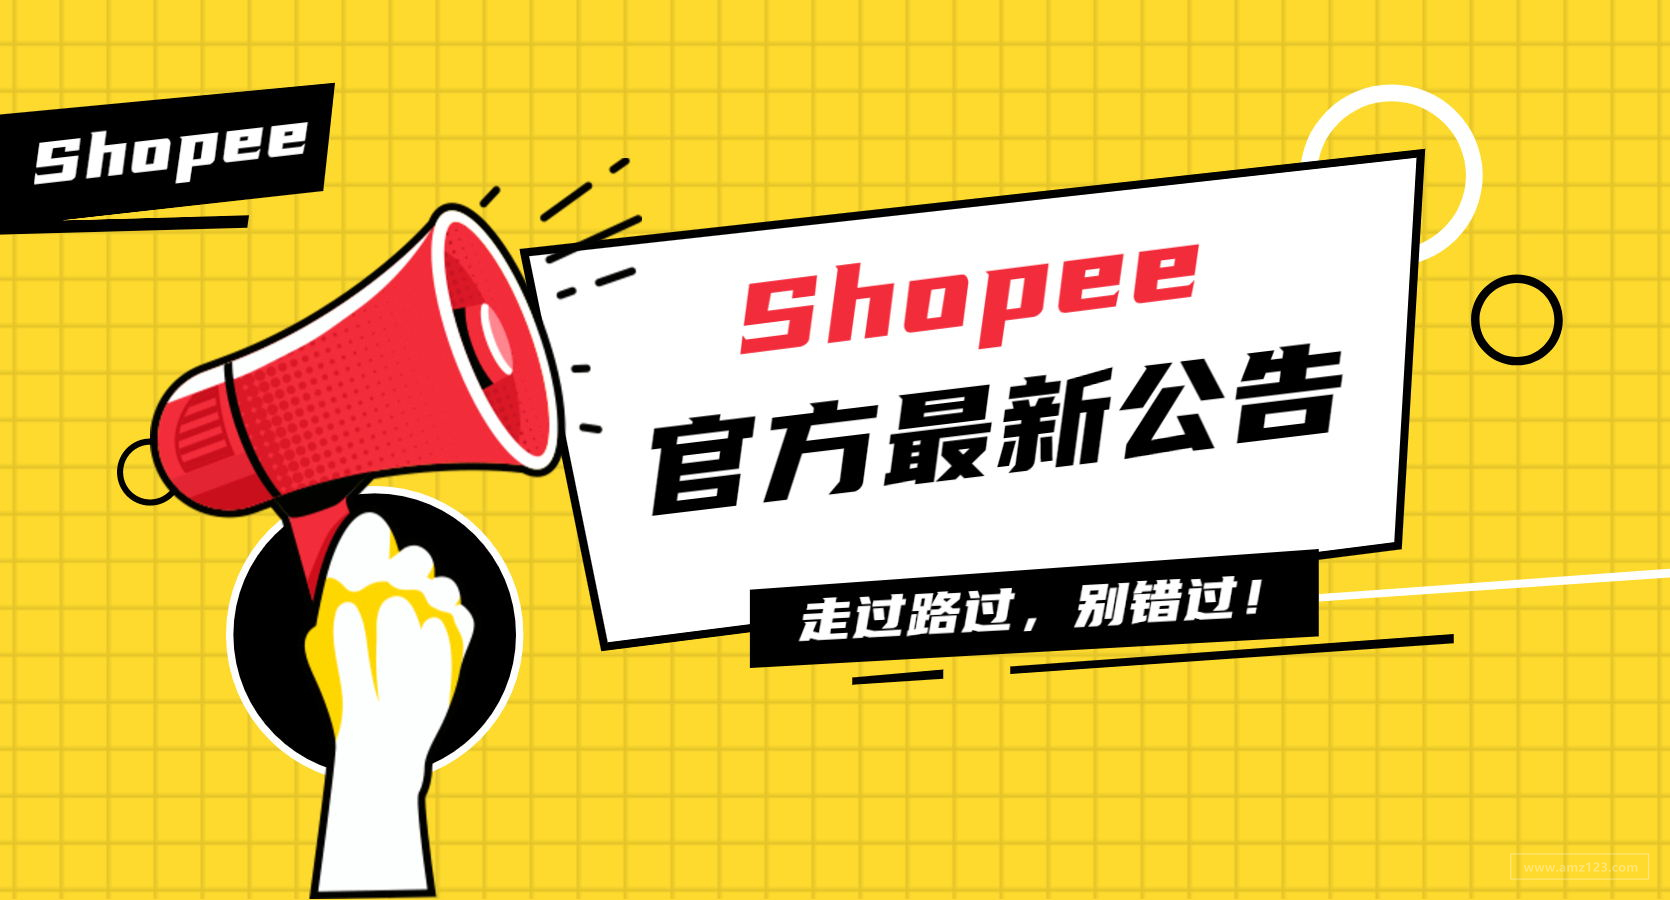 Shopee高订单取消率店铺将被打开假期模式通知